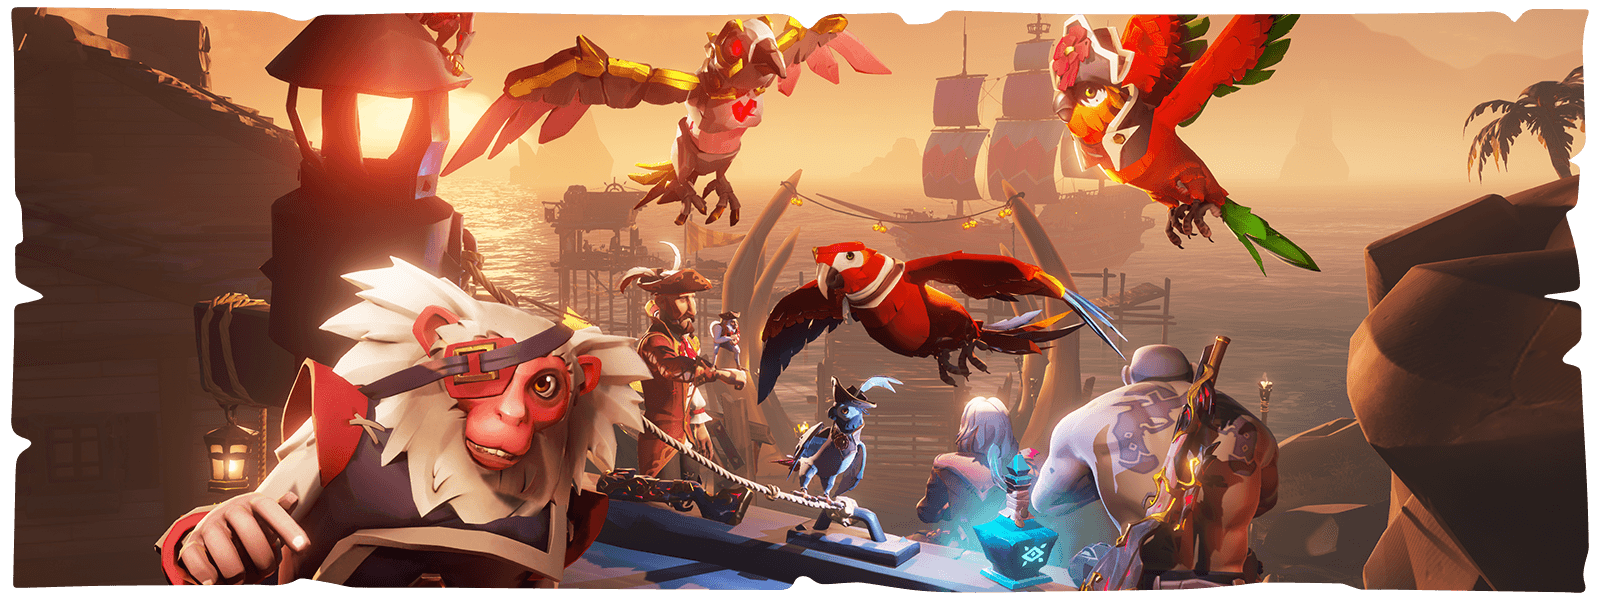 Personages, papegaaien en een aap voor een haven van Sea of Thieves